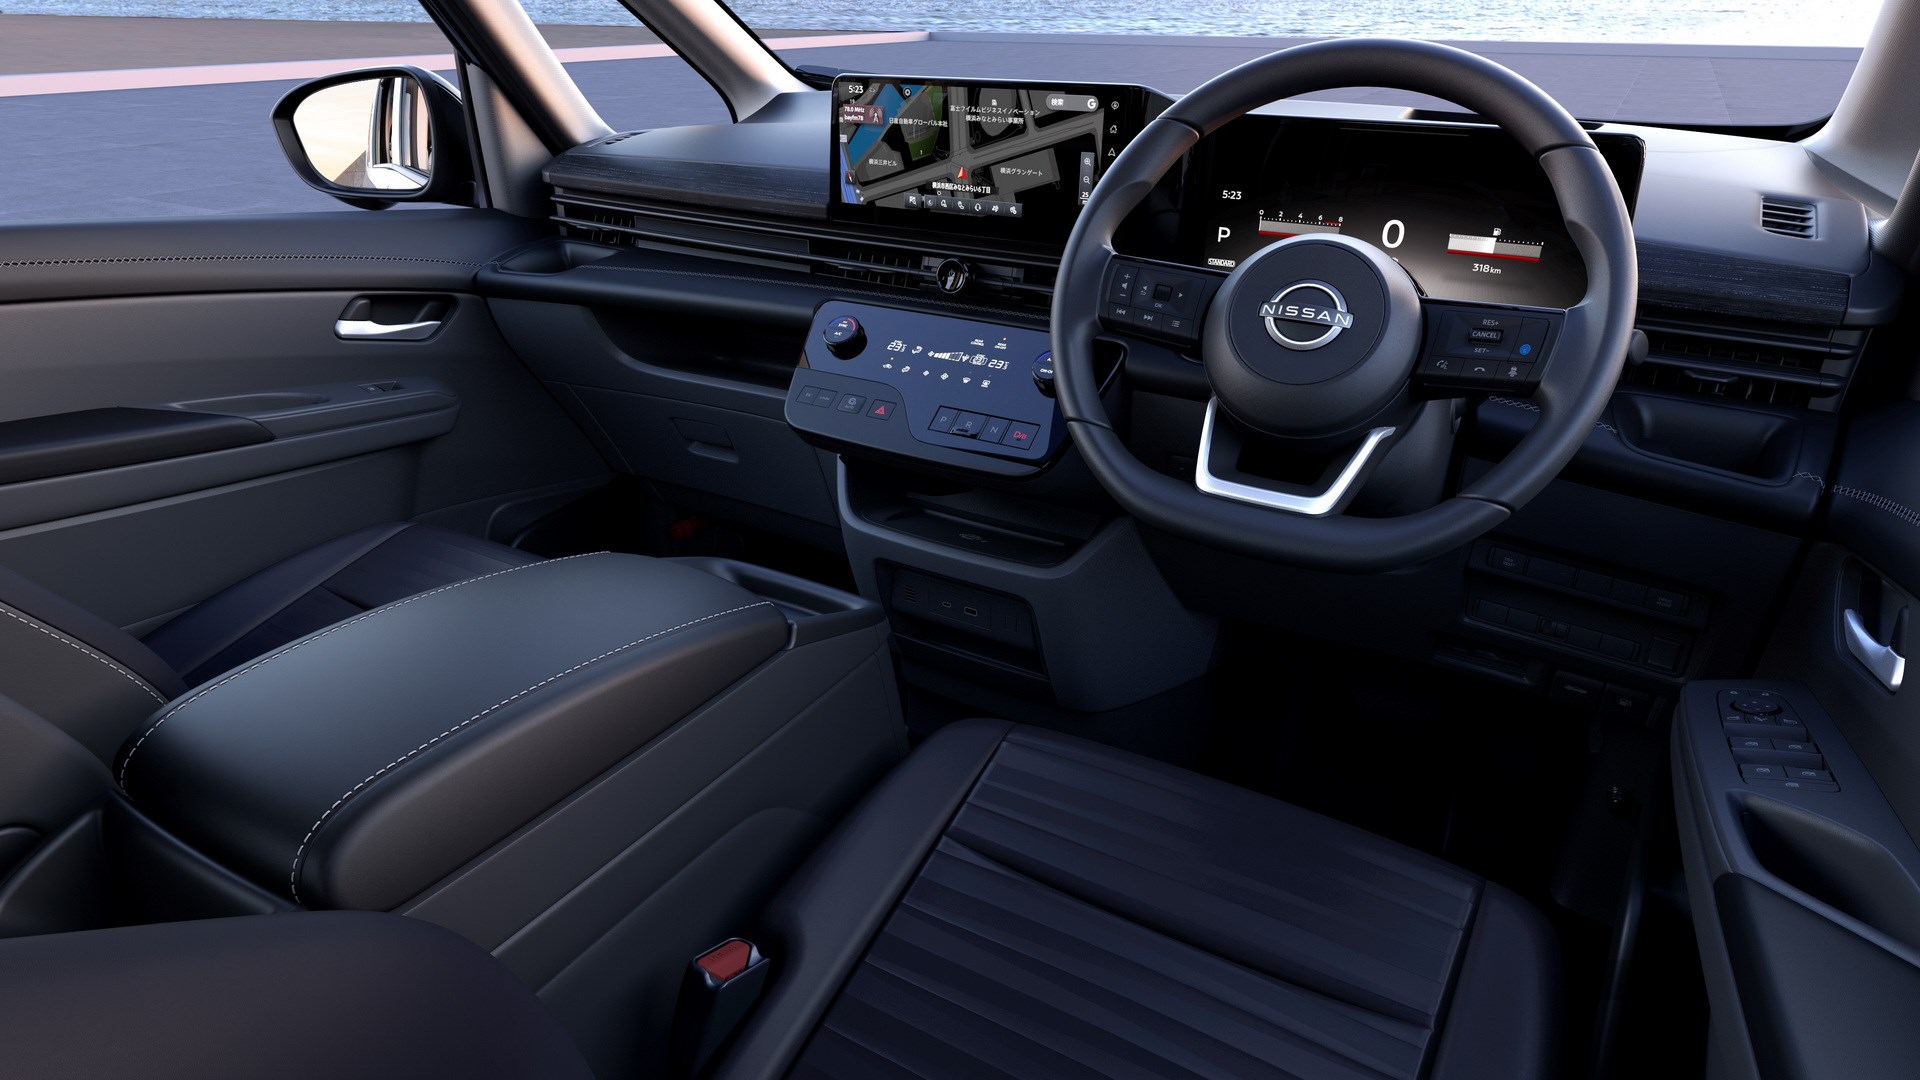 Yeni Nissan Serena minivan tanıtıldı: İşte tasarımı ve özellikler